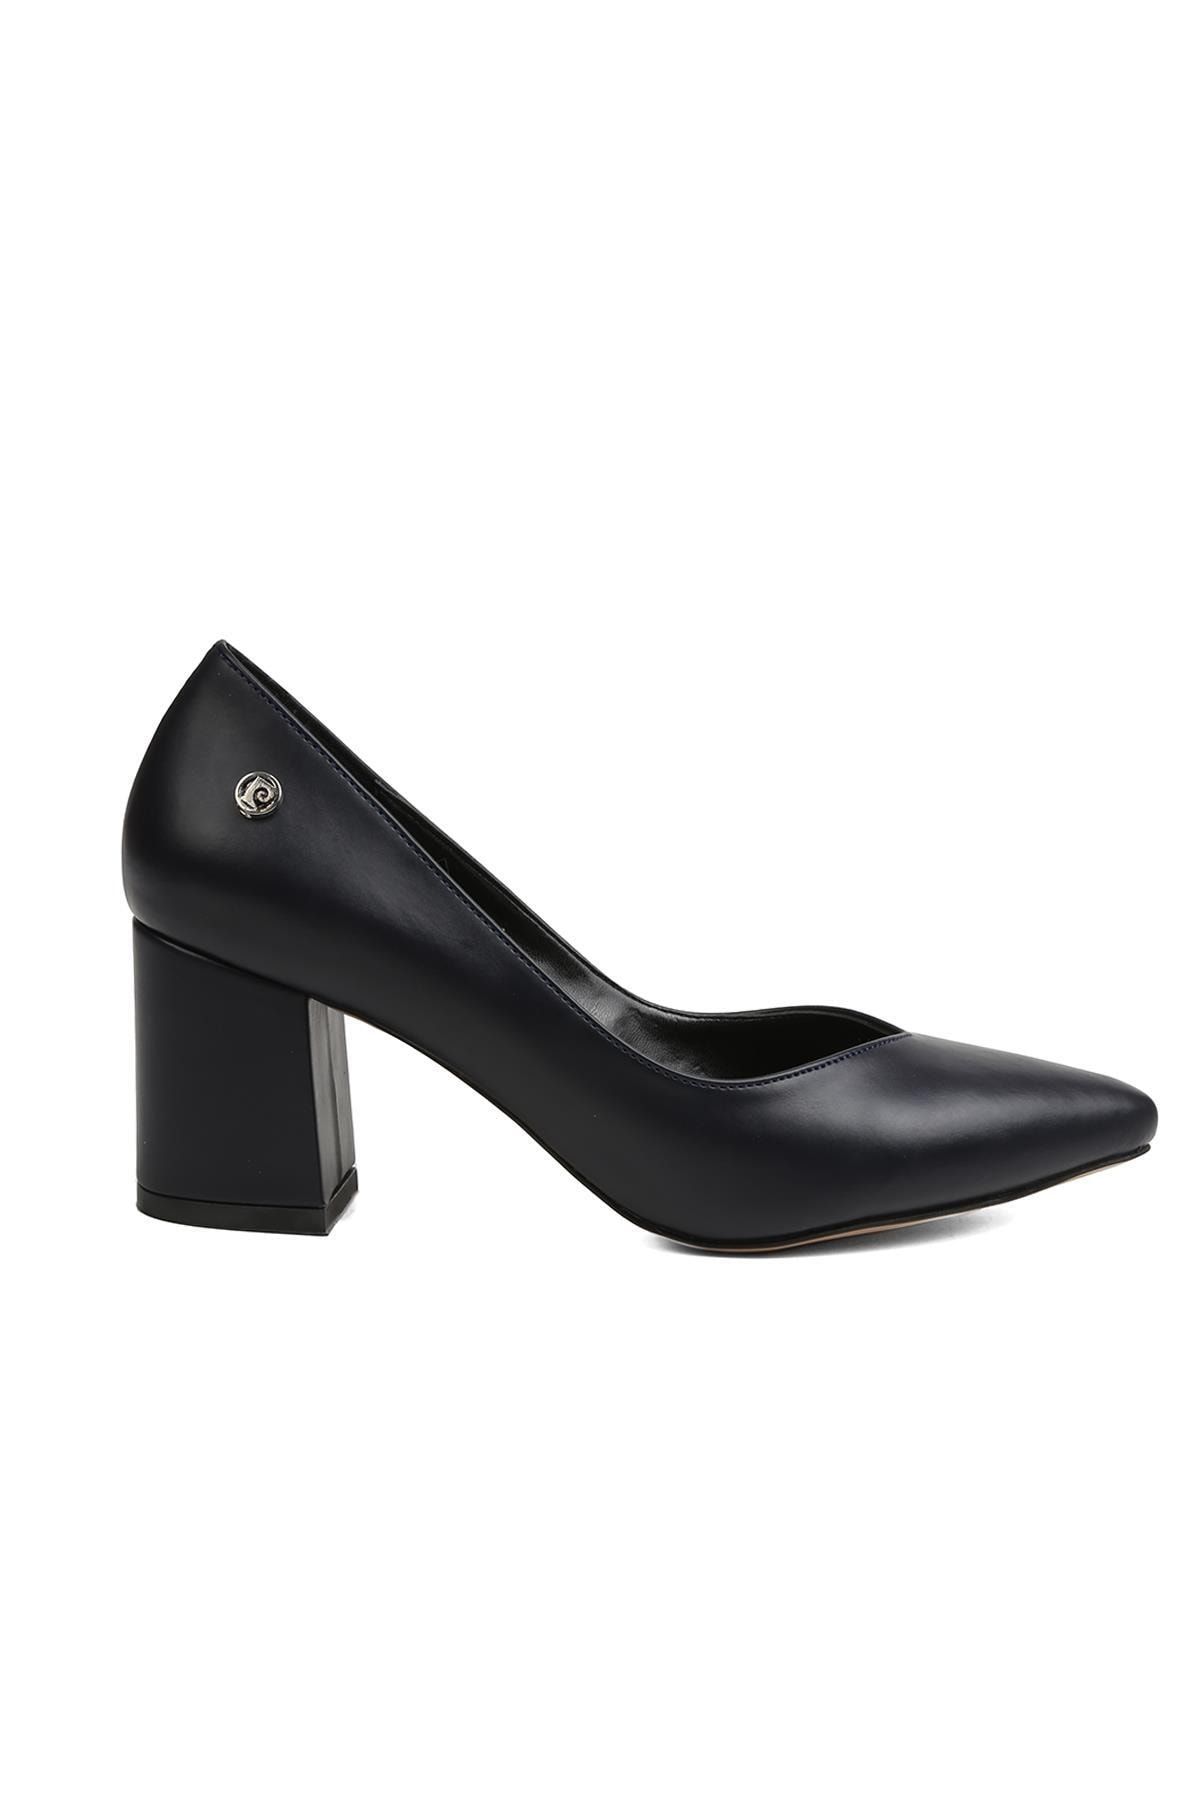 Pierre Cardin ® | Pc-50177 - 3066 Lacivert - Kadın Topuklu Ayakkabı